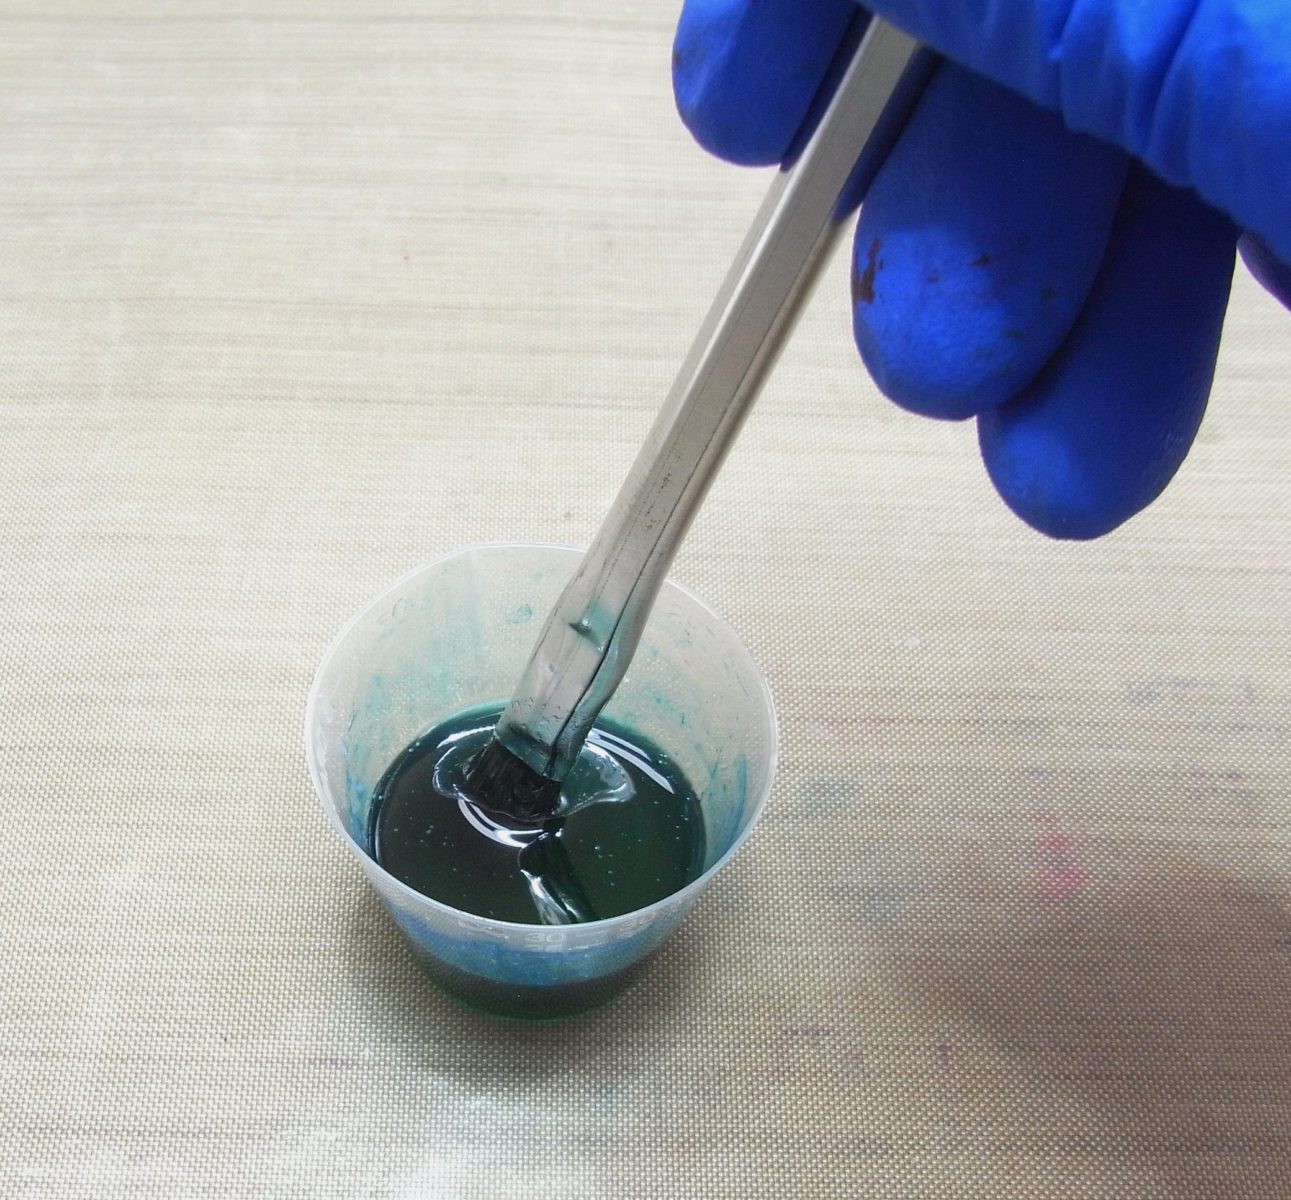 mixing blue color into polyurethane